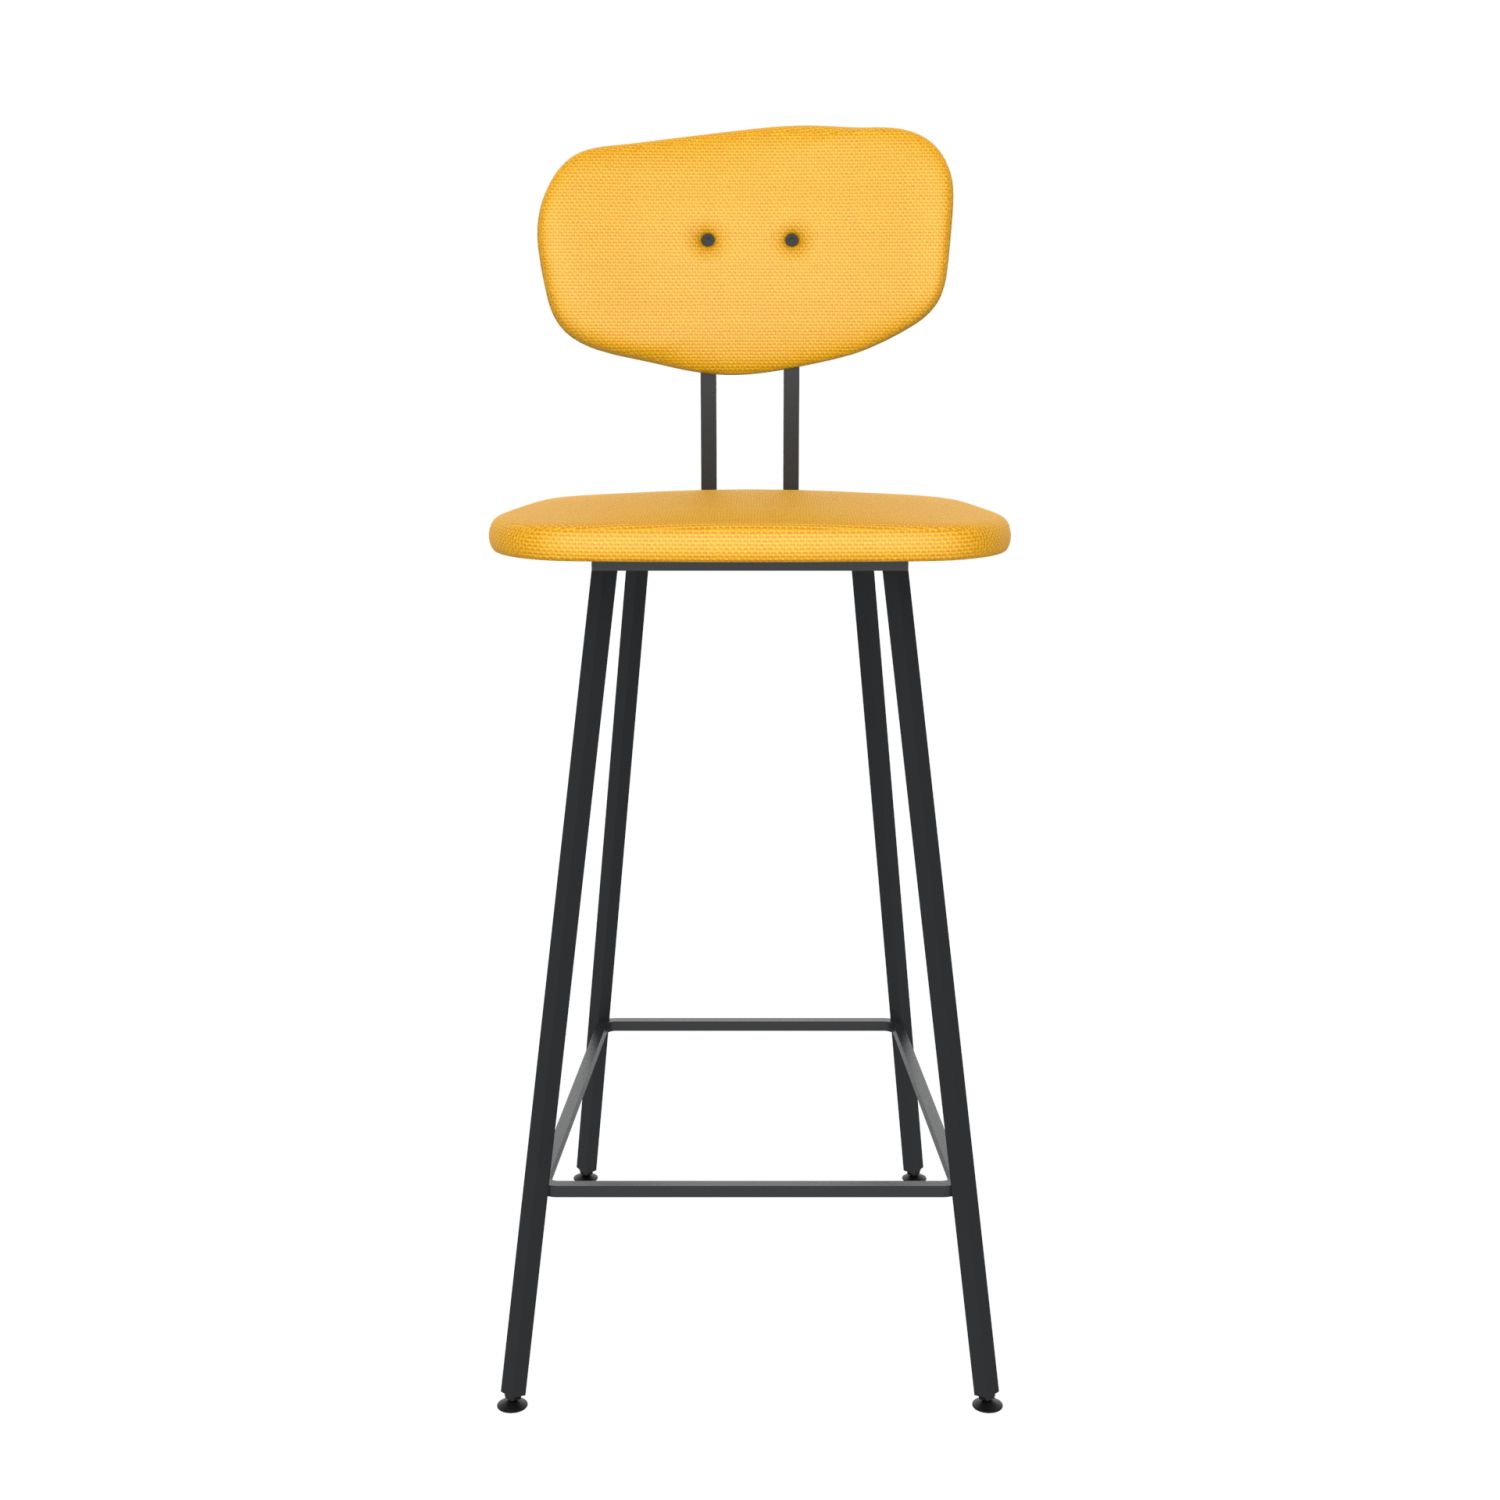 maarten baas barstool 75 cm without armrests backrest c lemon yellow 051 frame black